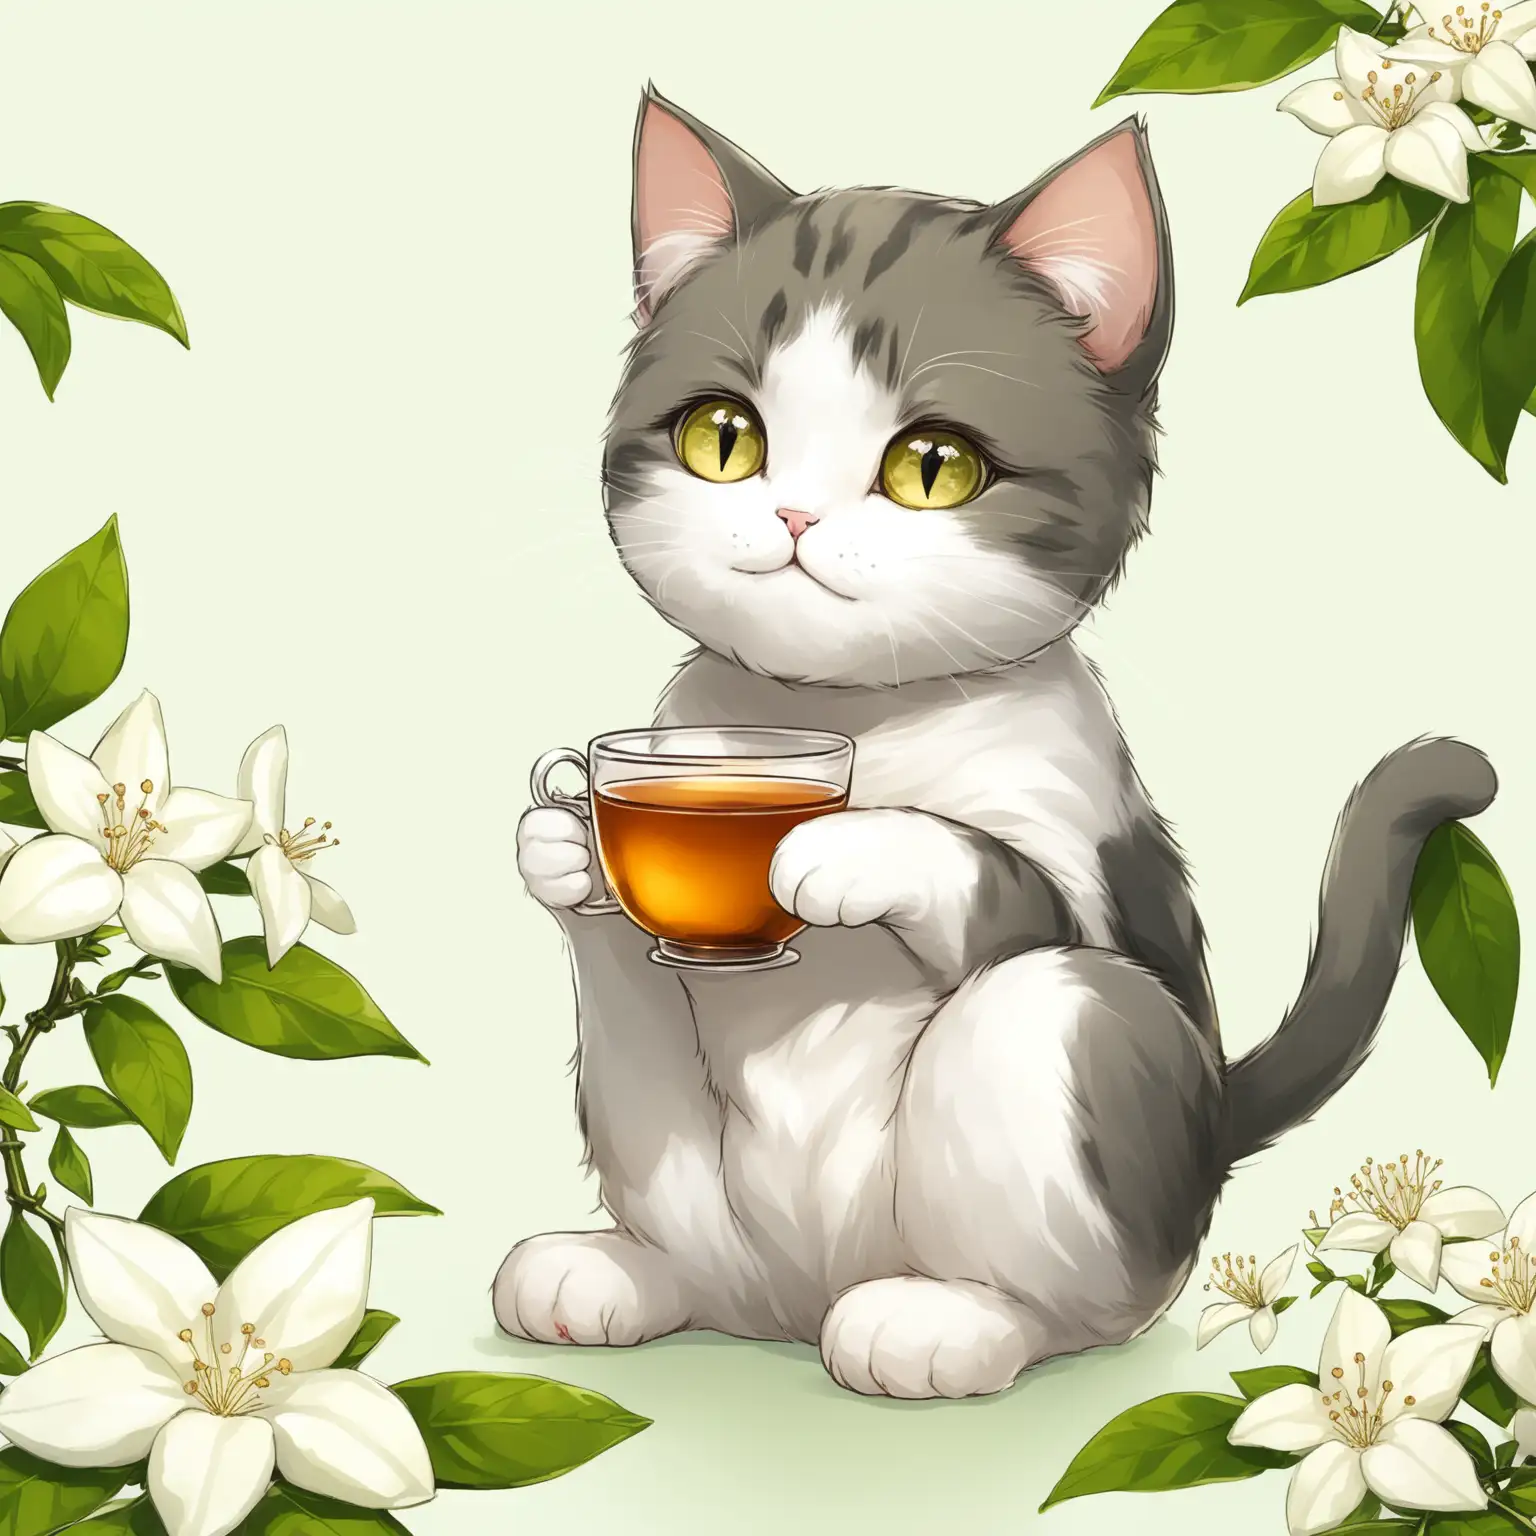 小清新浅色背景，一只可爱的小猫坐在一朵盛开茉莉花上喝茶，表情惬意放松